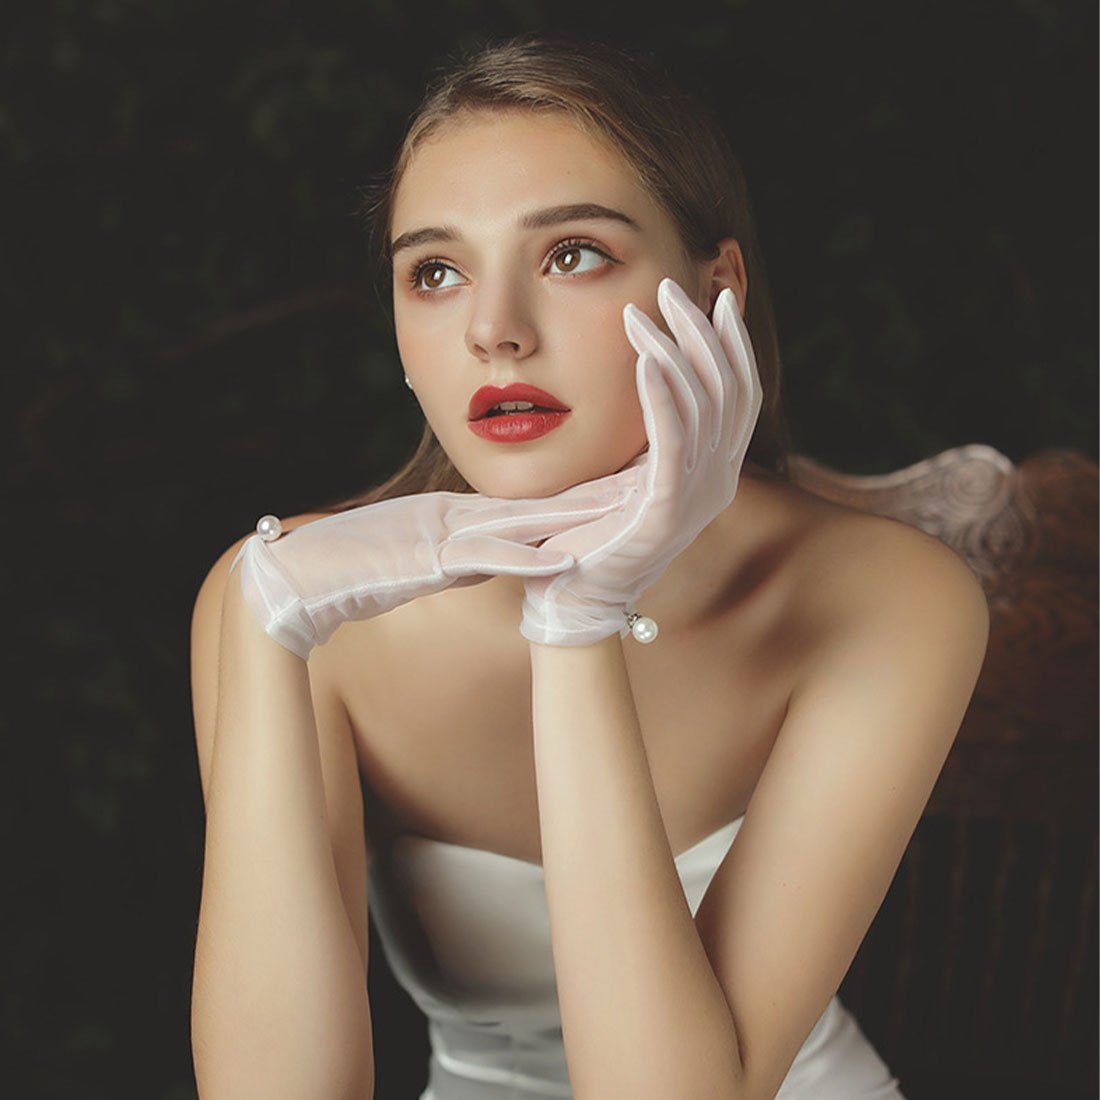 DÖRÖY Abendhandschuhe Braut Hochzeit Premium Handschuhe, Perle kurze weiße Handschuhe